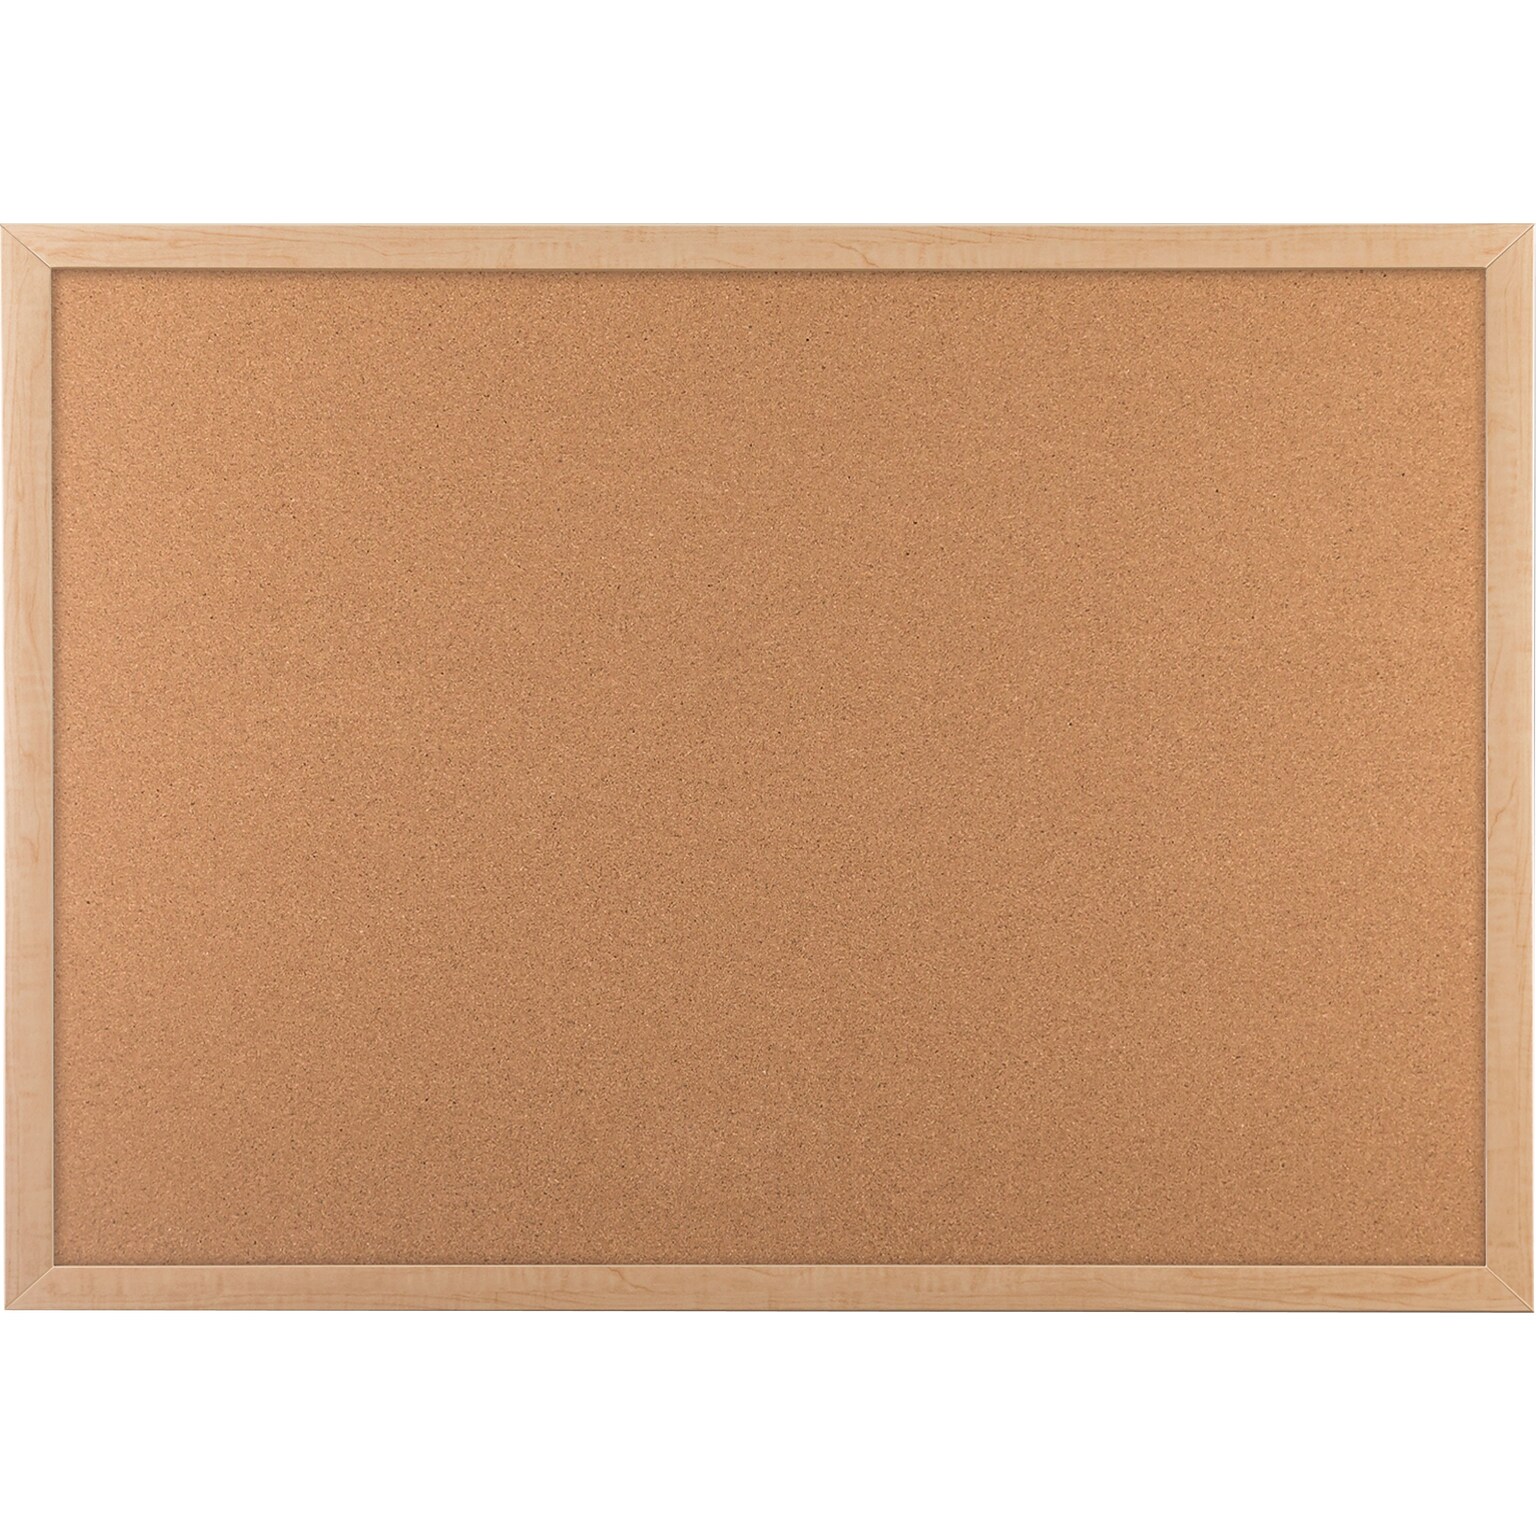 U Brands Cork Bulletin Board, Oak Finish Frame, 35 x 23 (266U00-01)